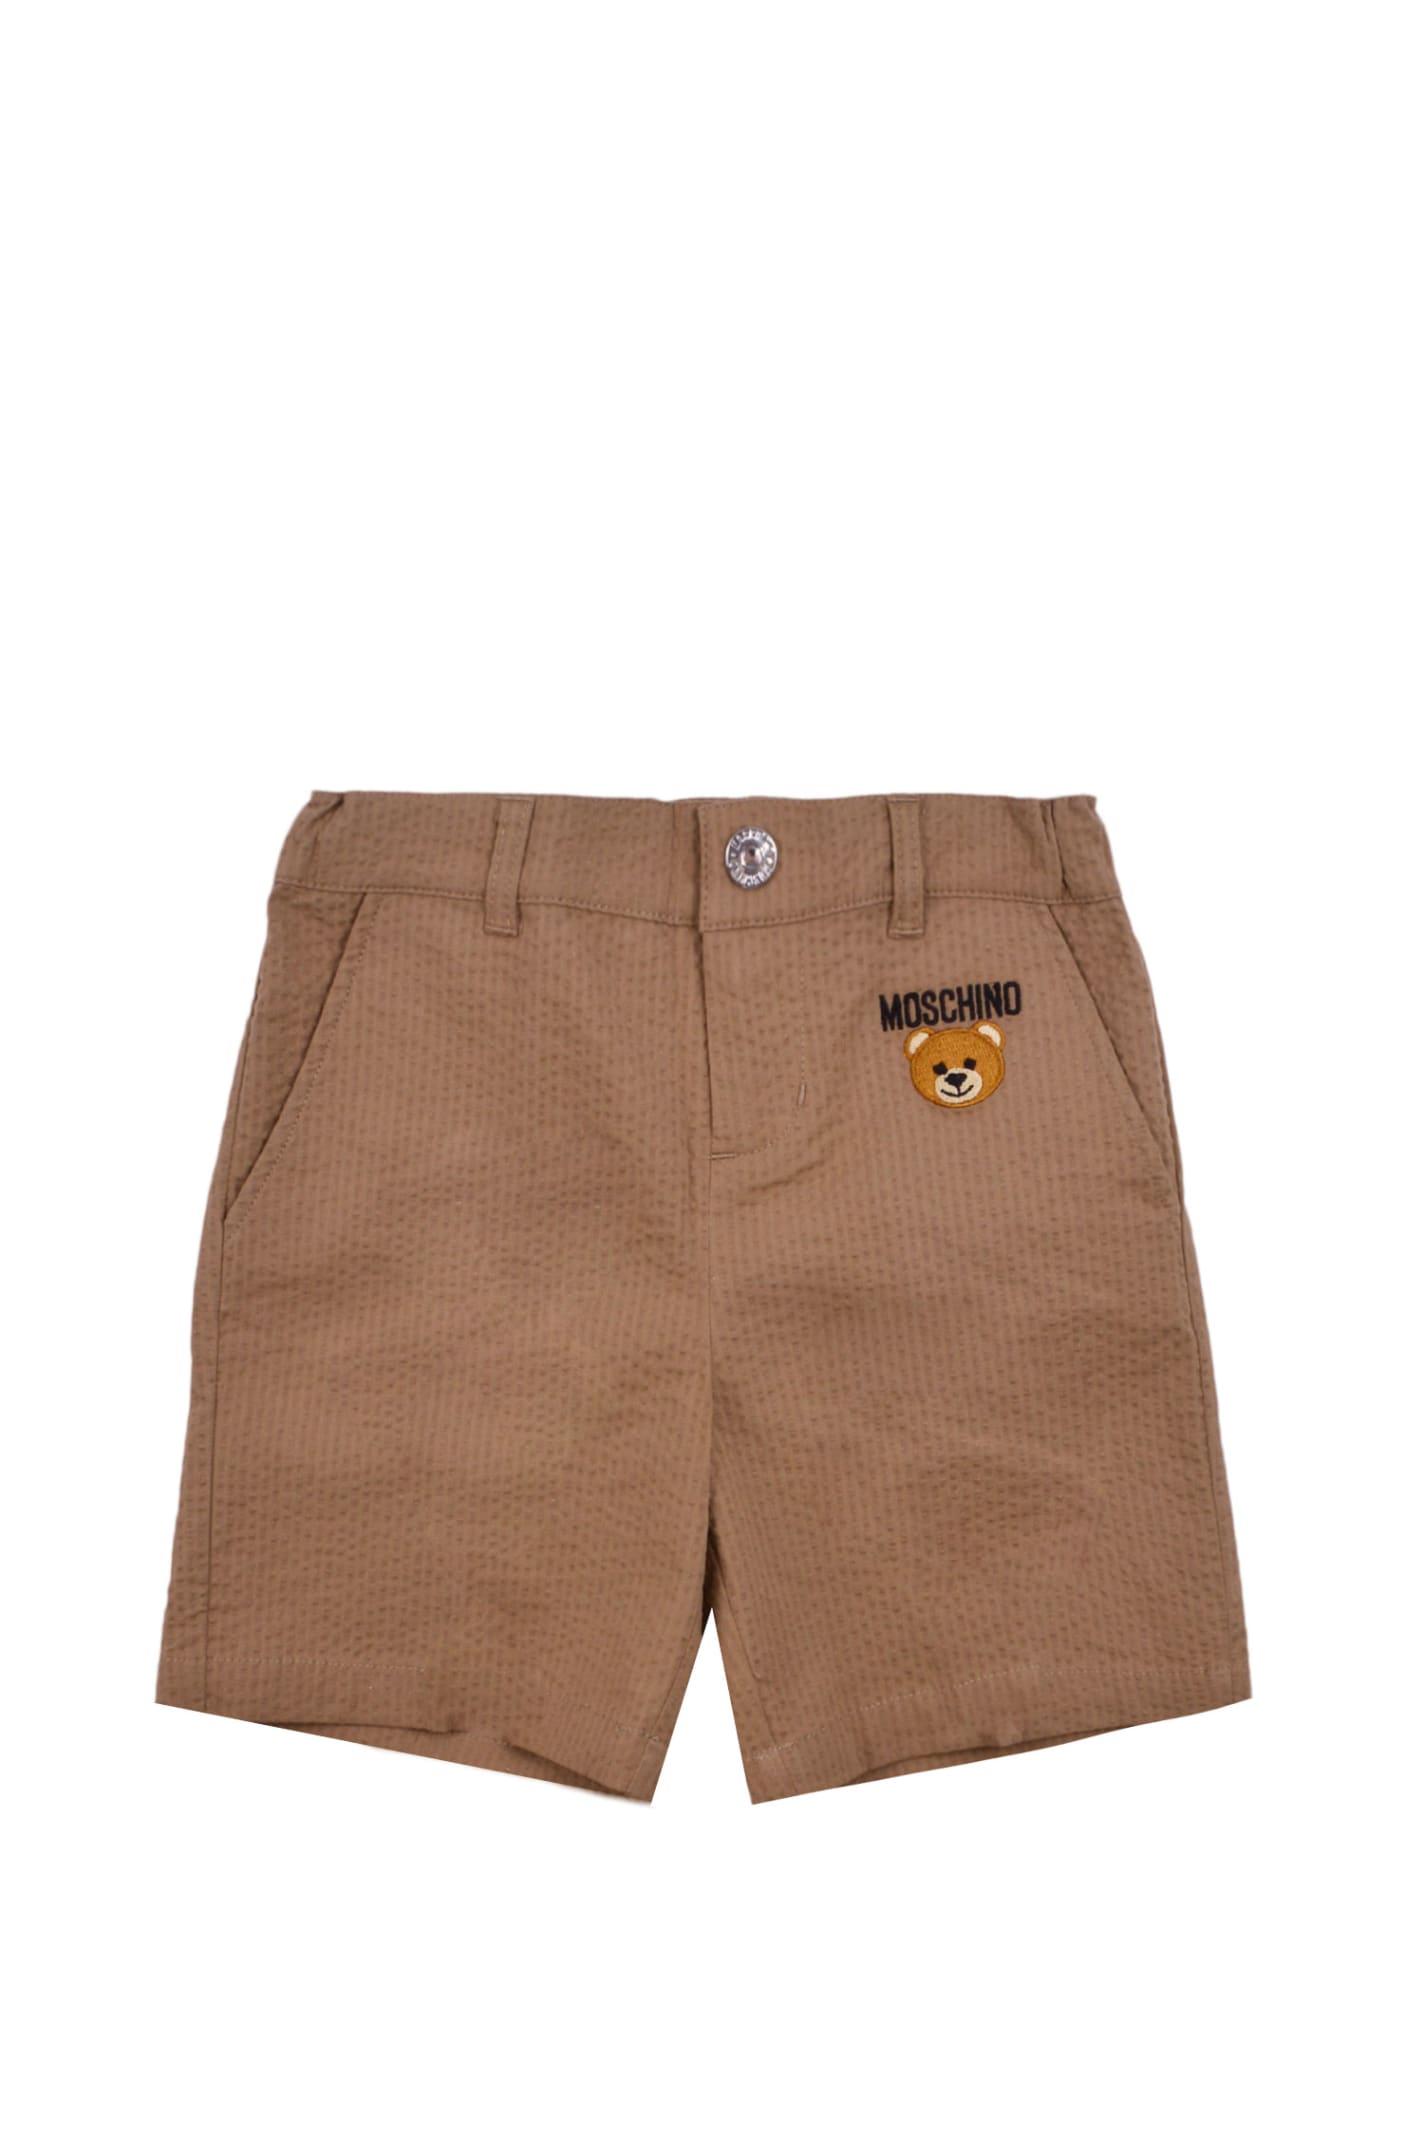 Moschino Cotton Shorts